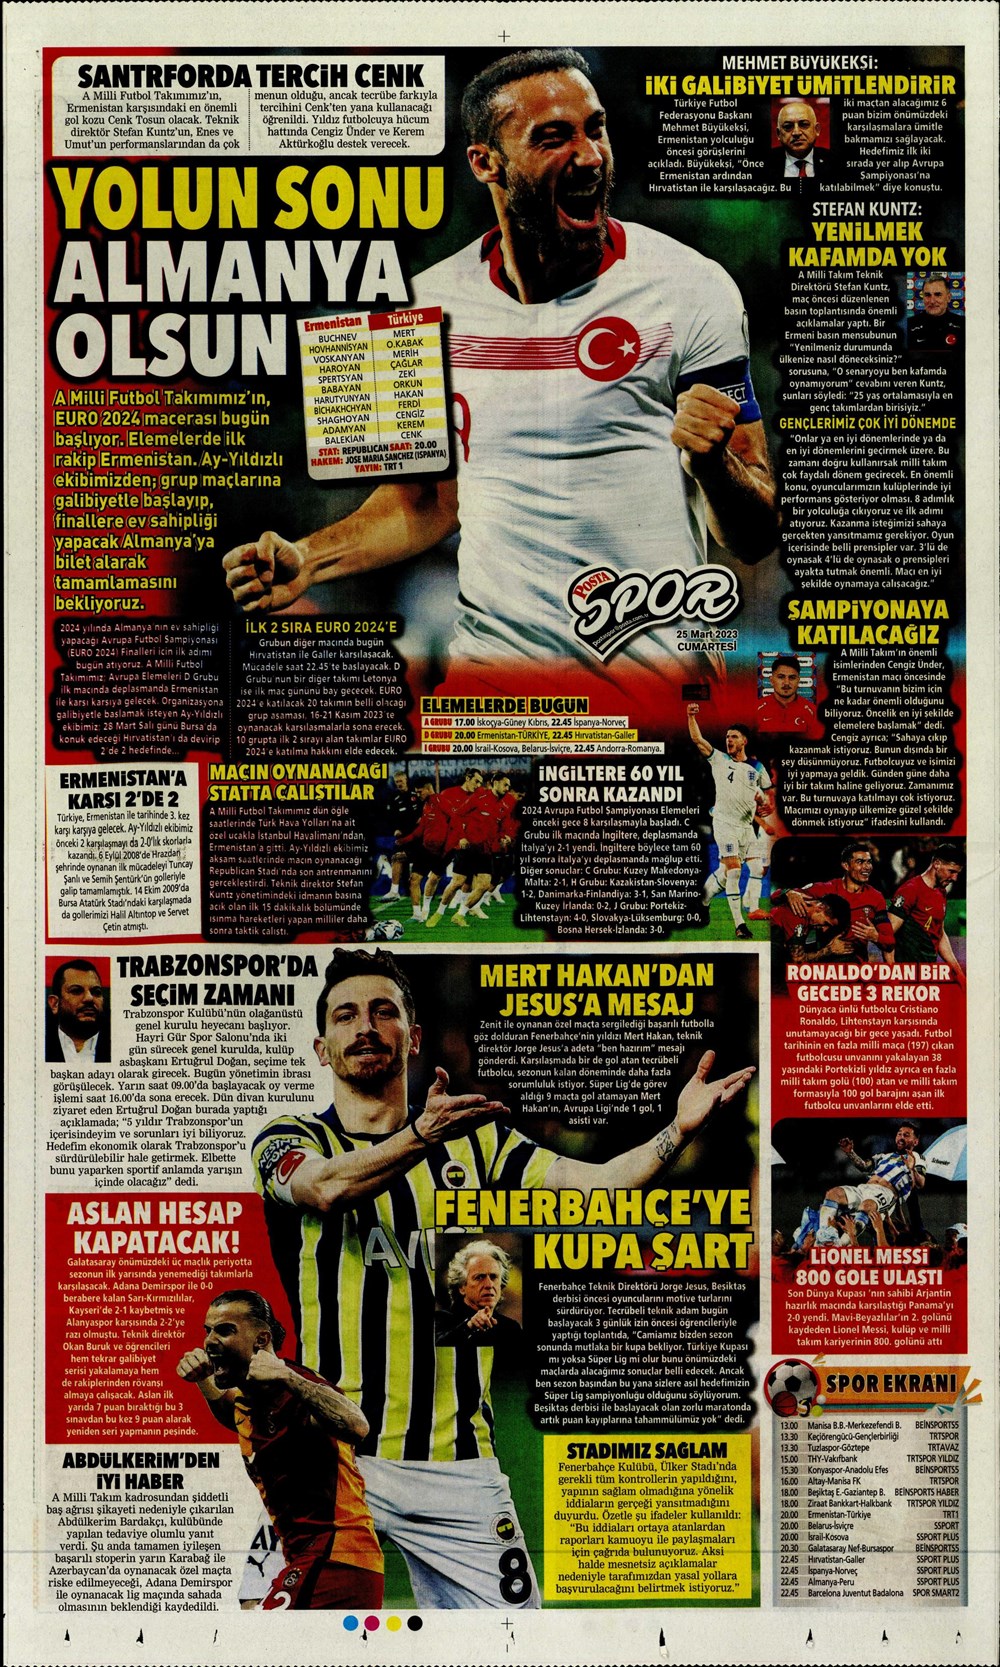 "Yeni bir başlangıç" - Sporun manşetleri - 24. Foto